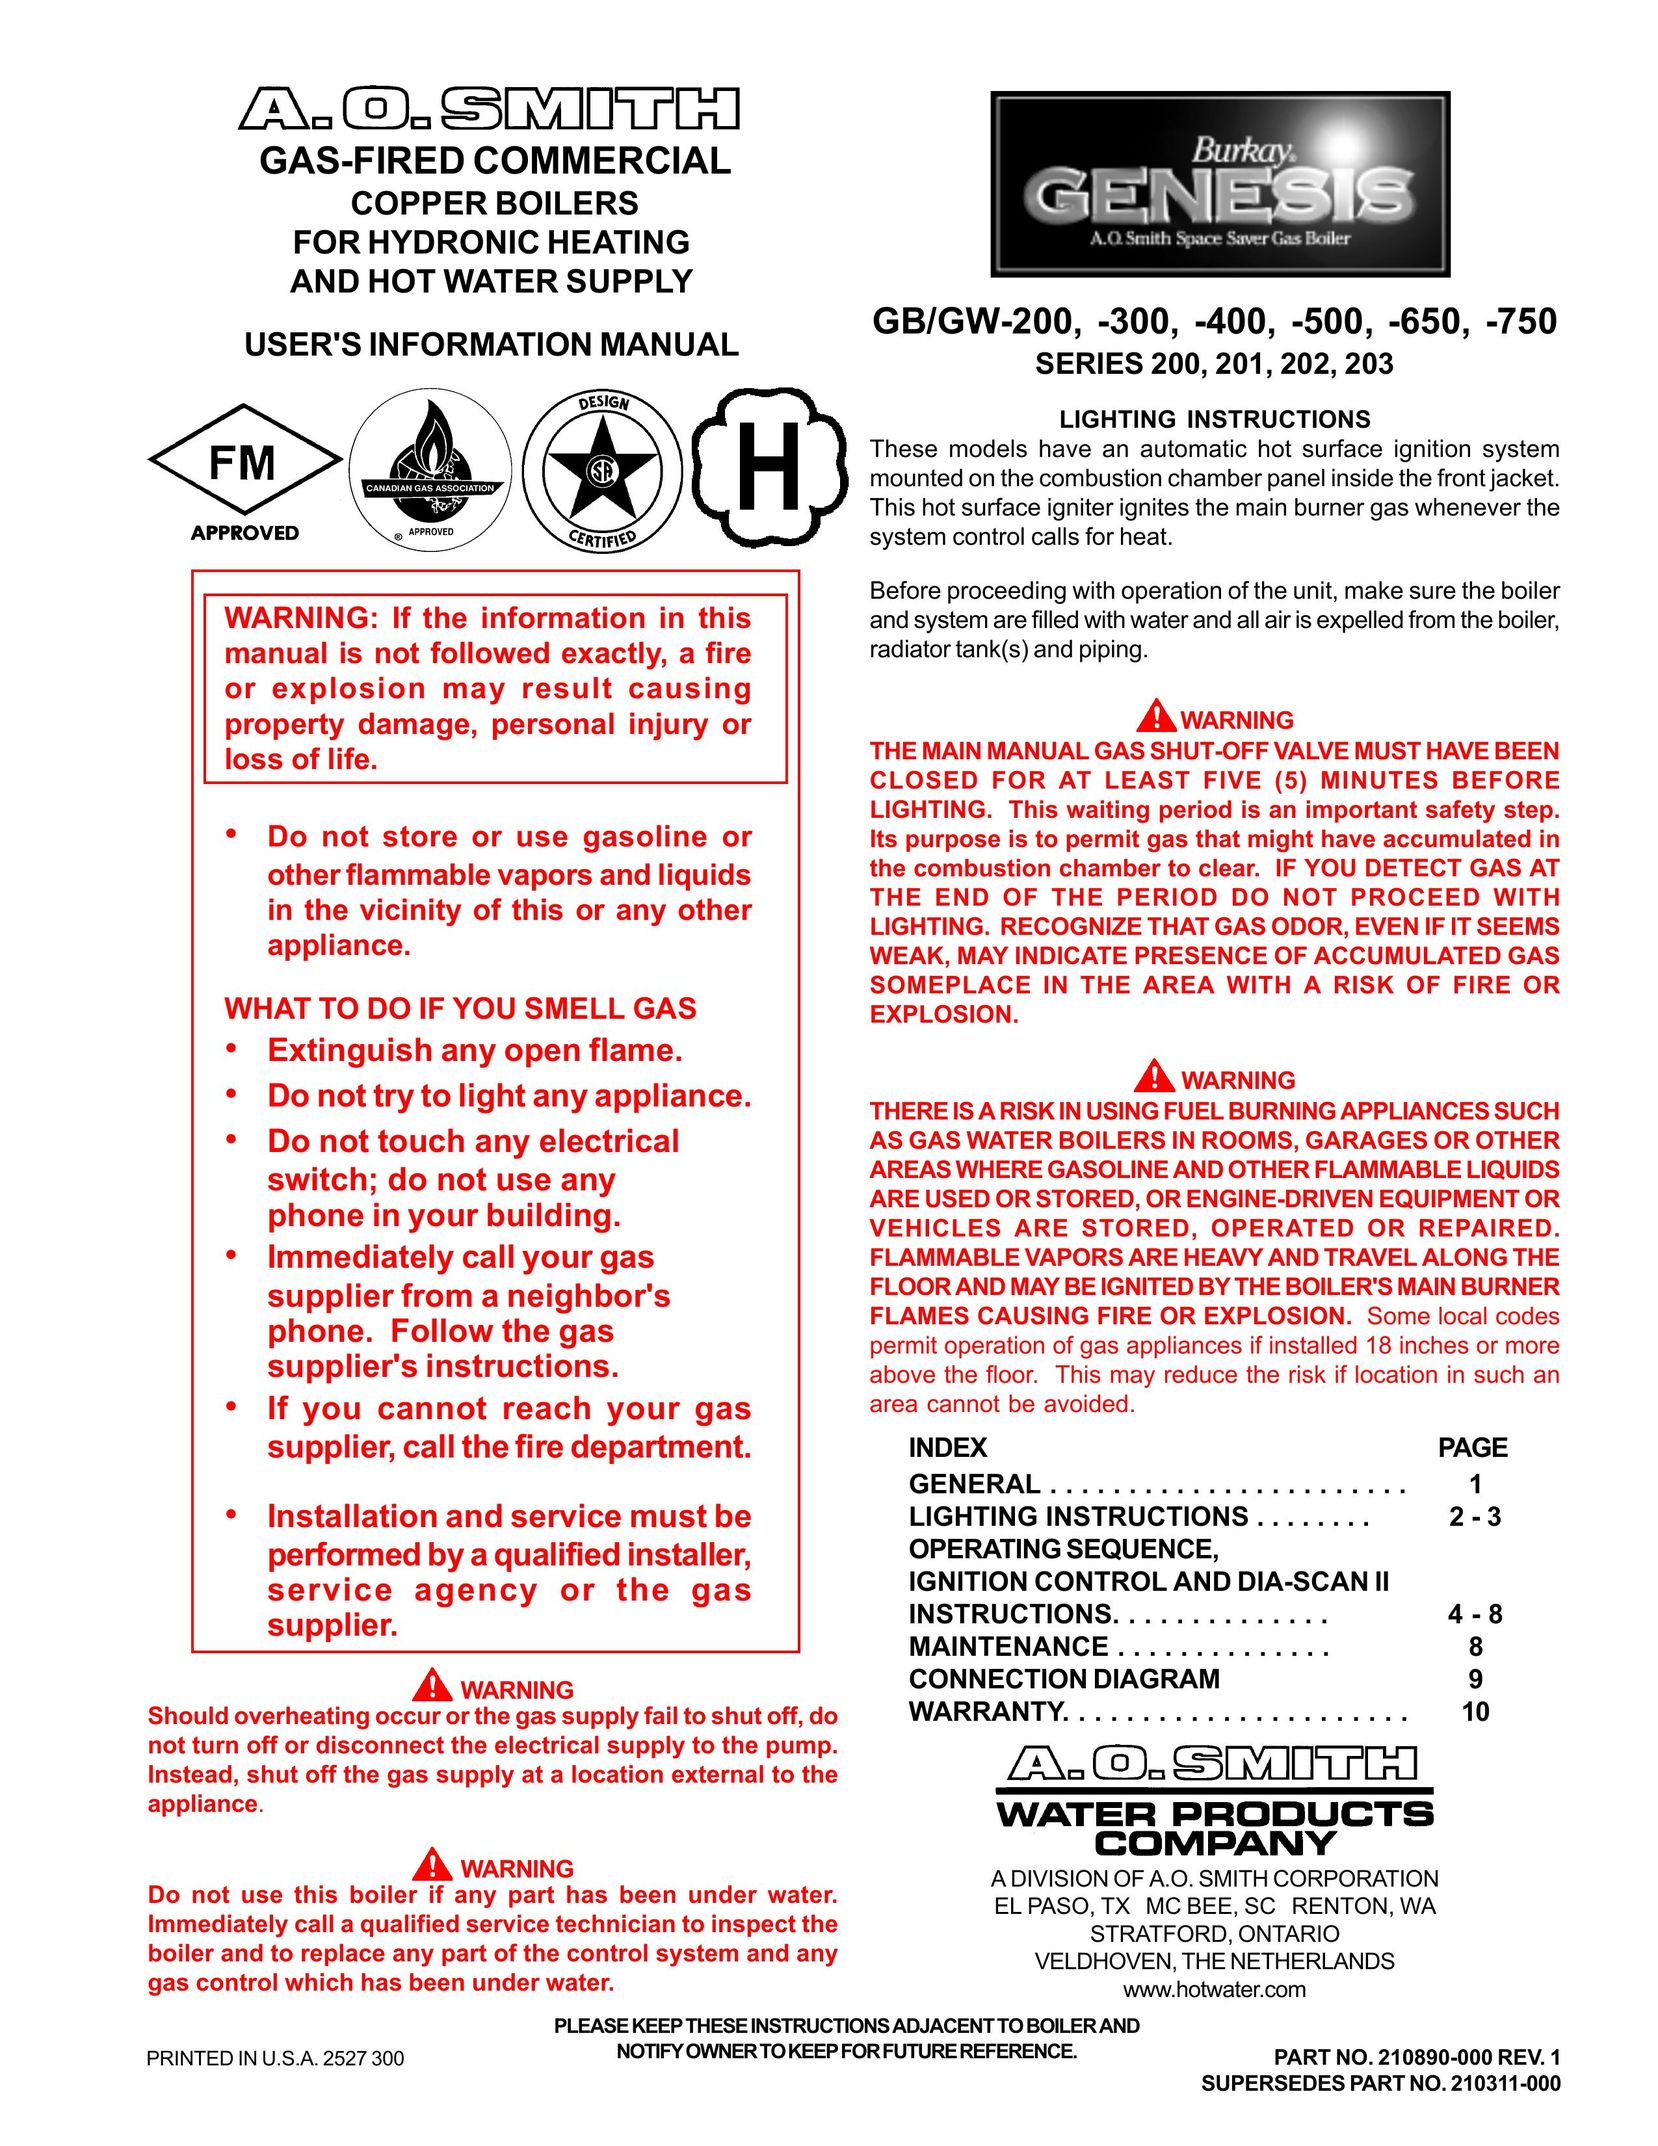 A.O. Smith GB/GW-750 Boiler User Manual